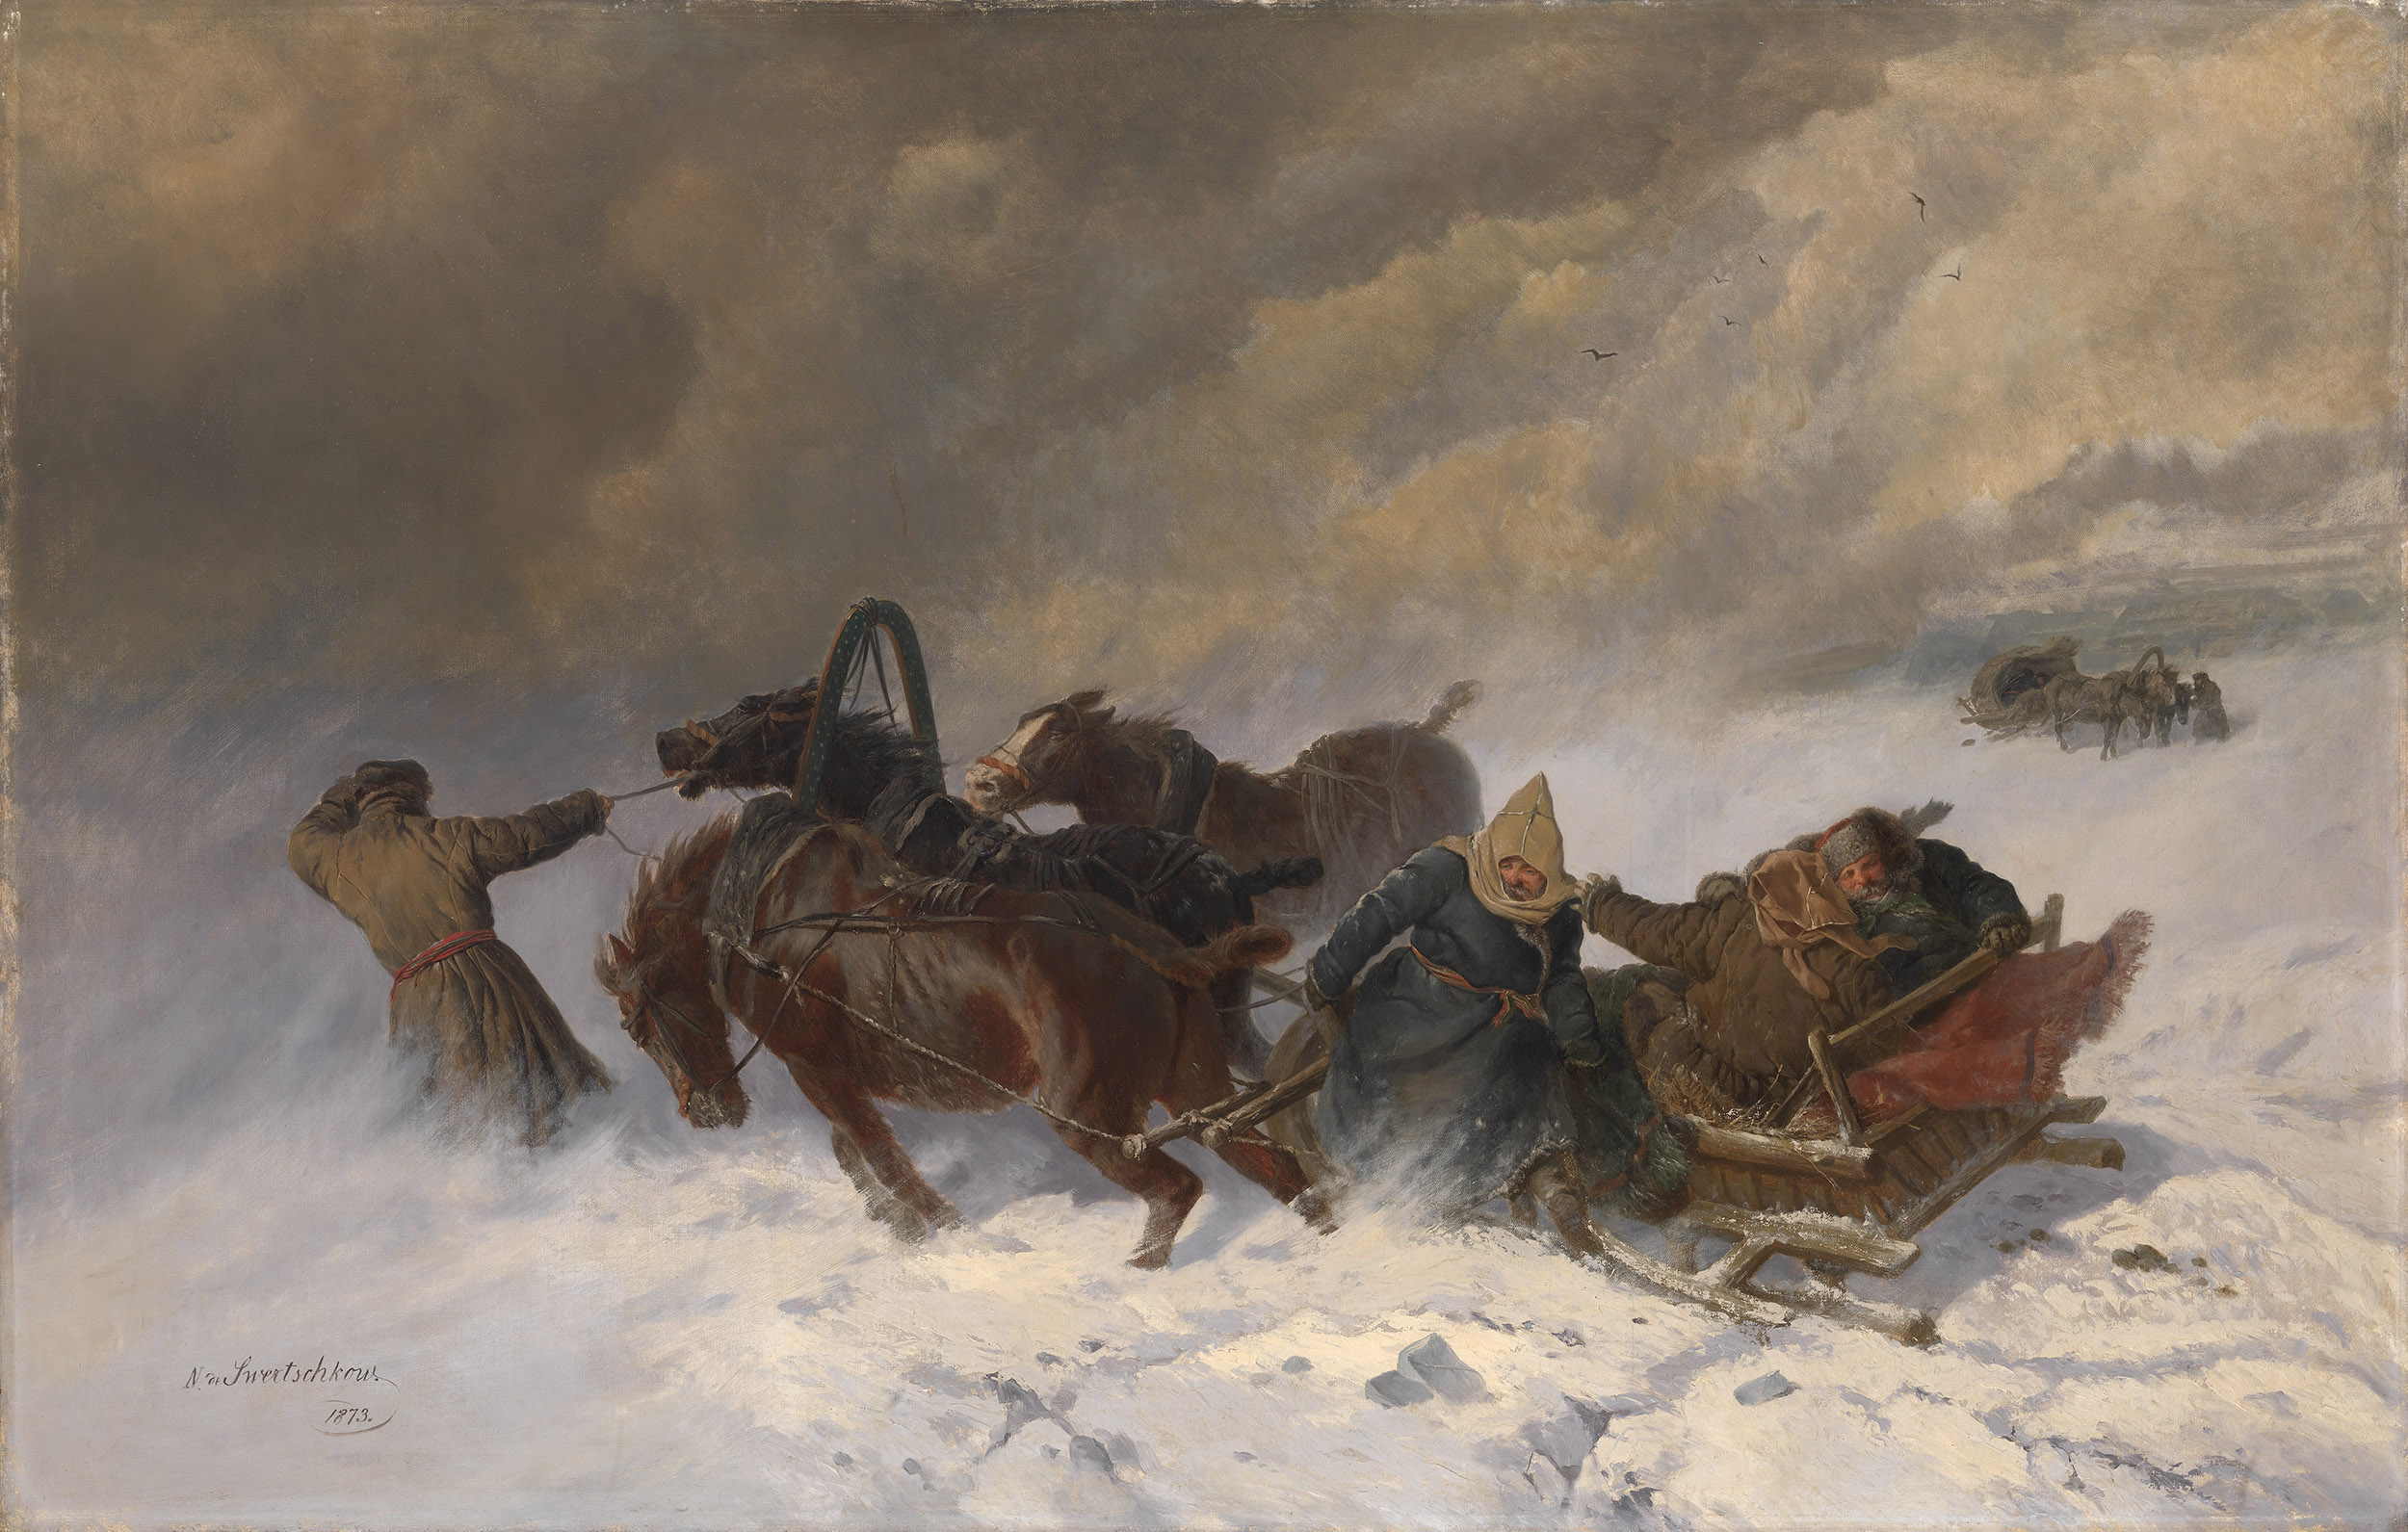 SVERCHKOV, NIKOLAI Into the Blizzard